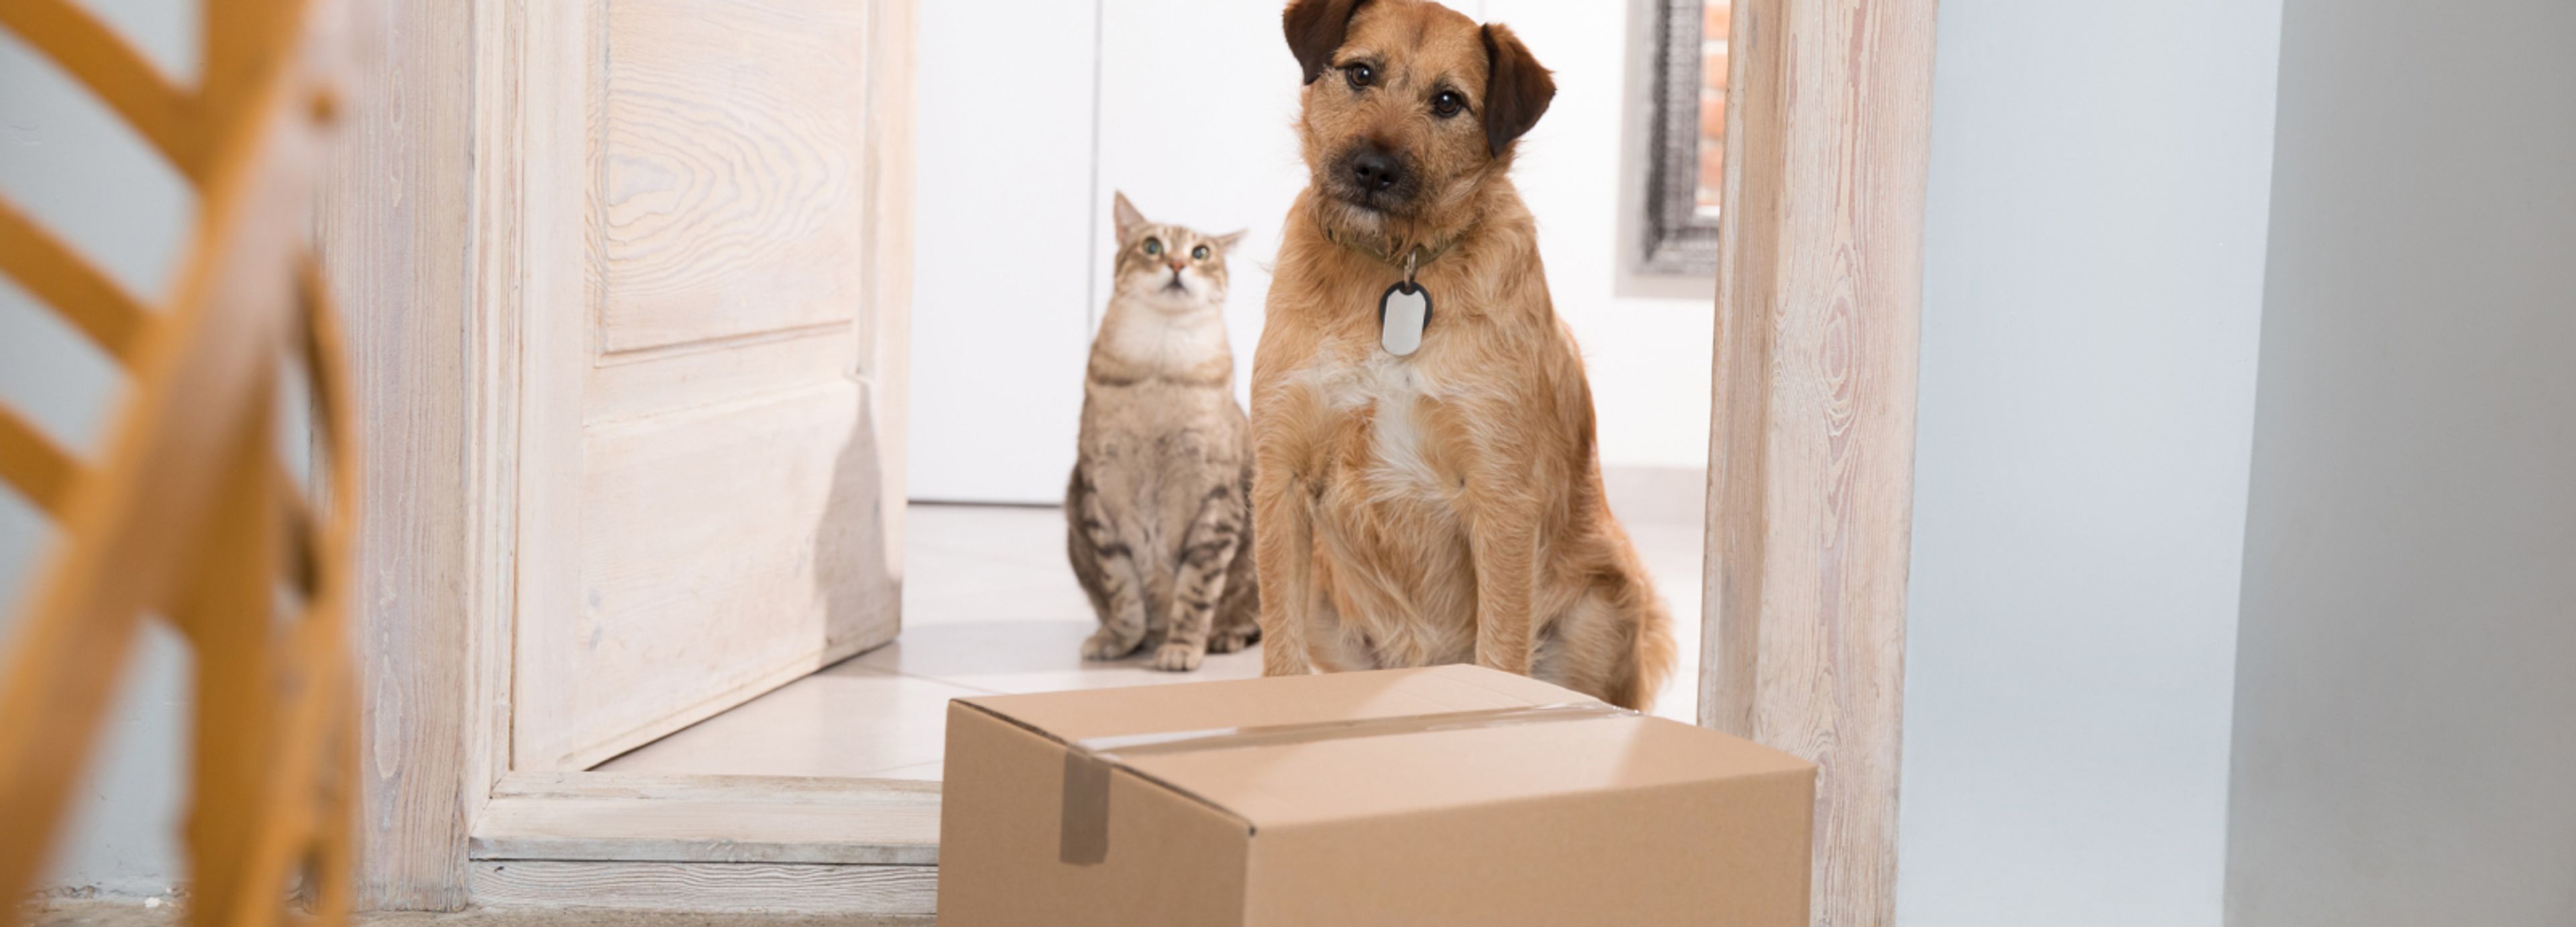 cane e gatto guardano pacco